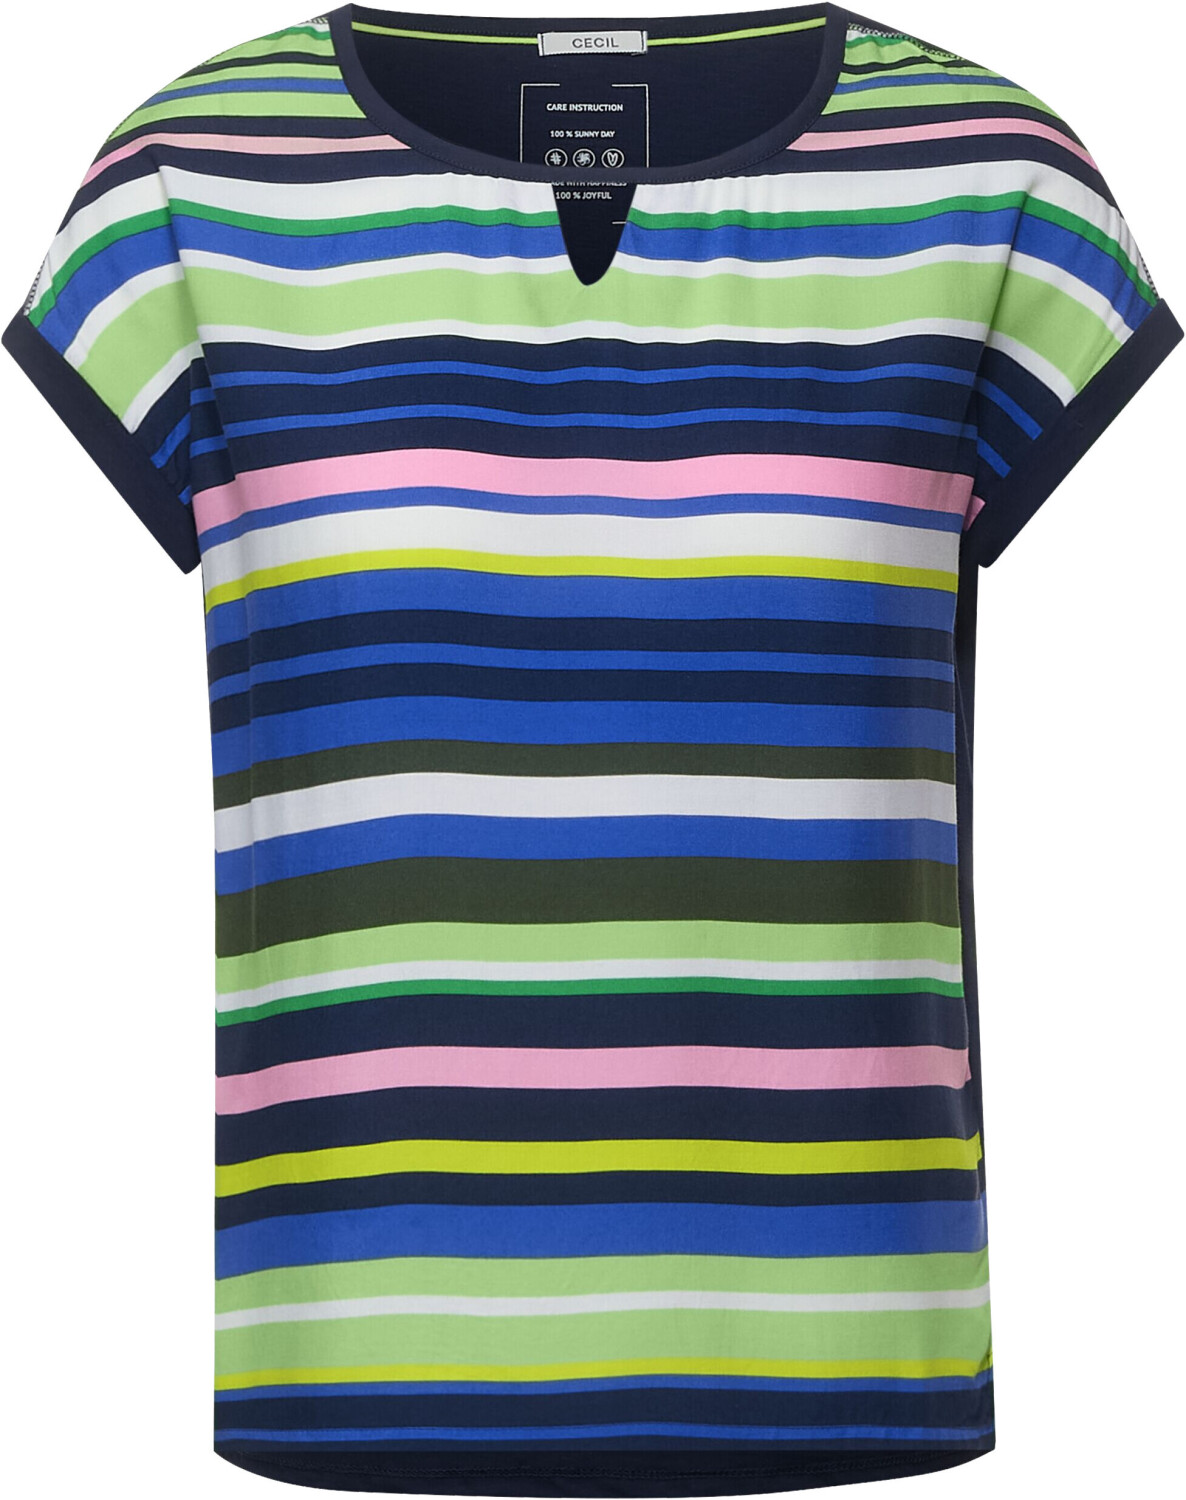 Cecil T-Shirt (B317843) river blue ab 25,00 € | Preisvergleich bei